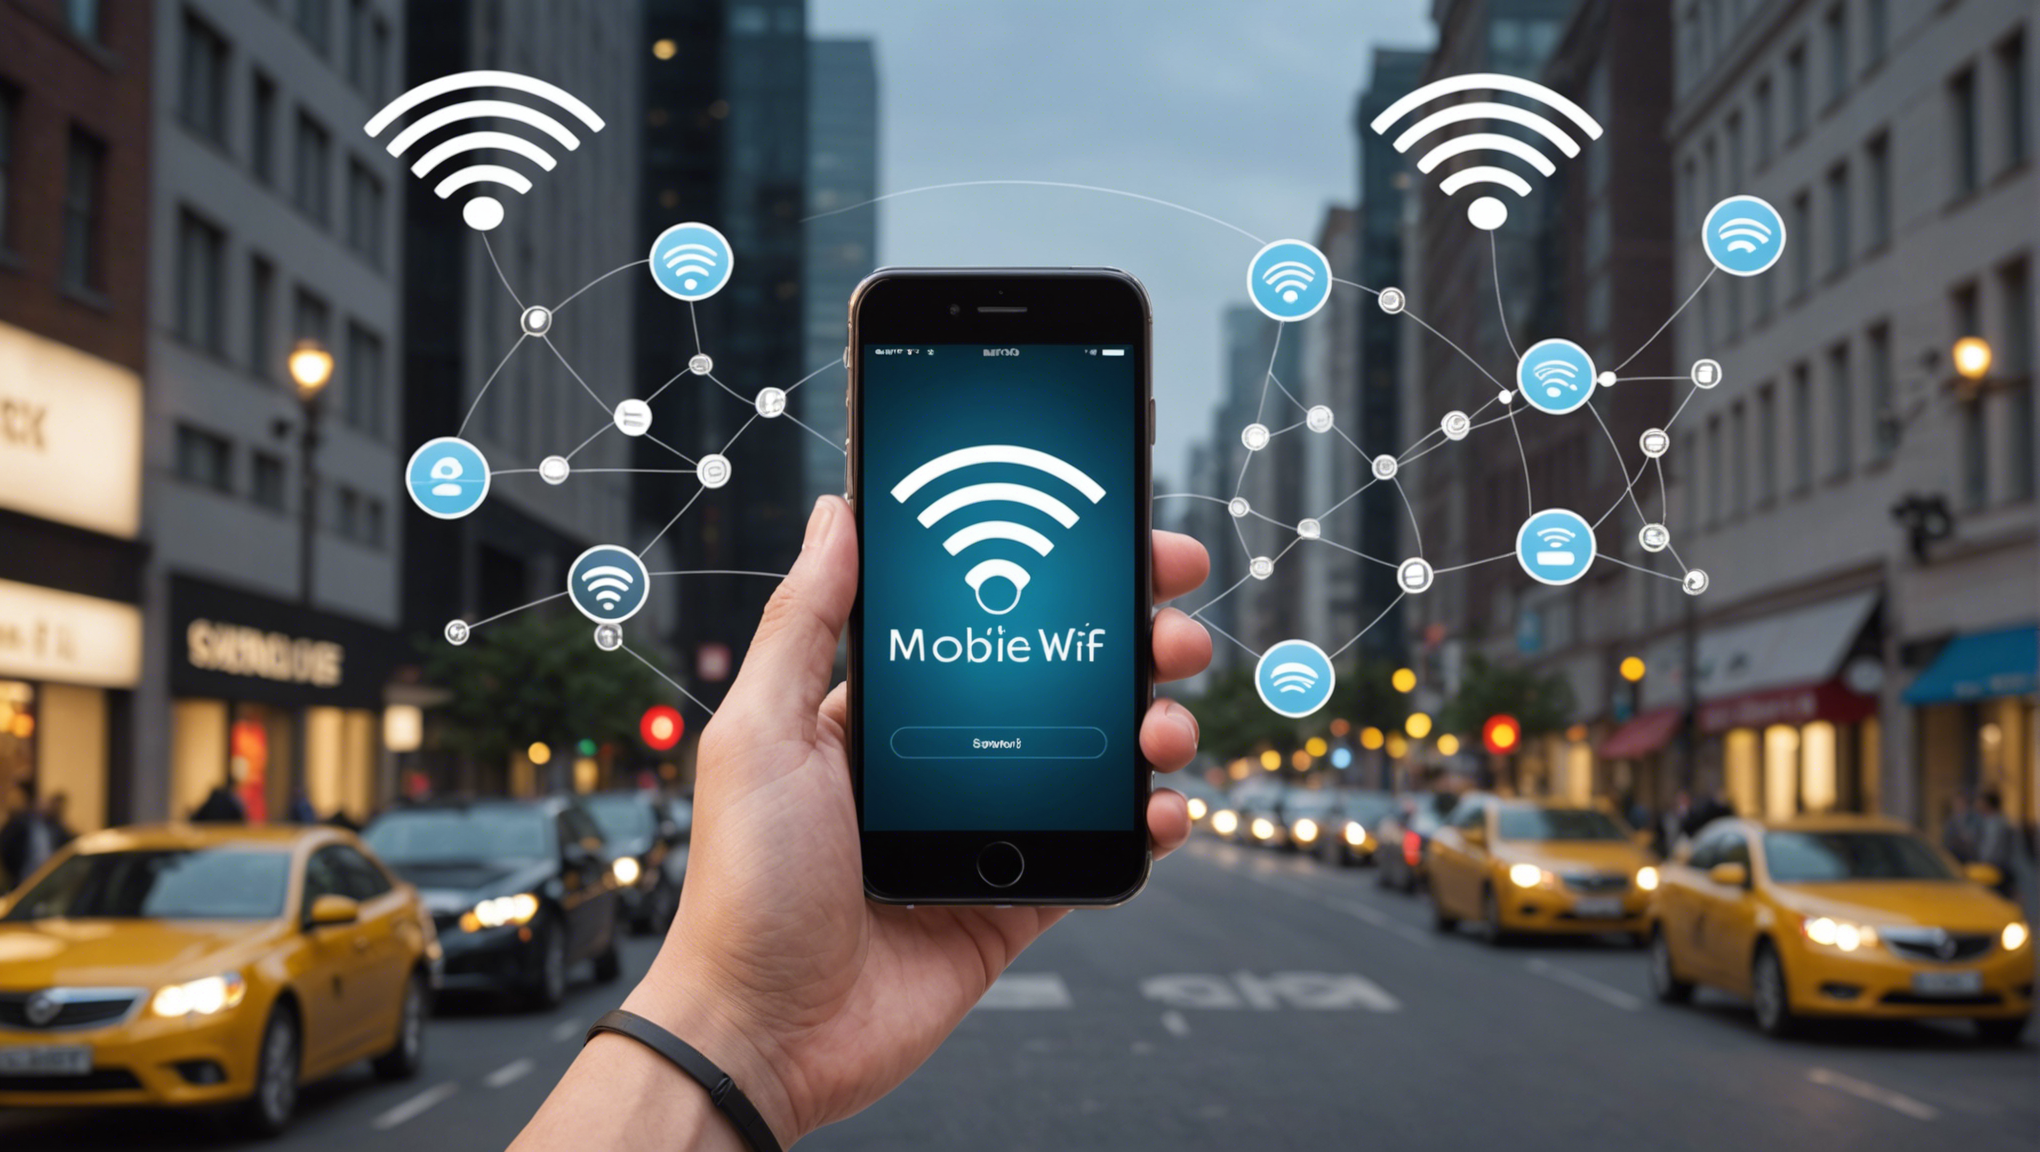 découvrez le wi-fi mobile : une révolution sans fil qui transforme notre manière de nous connecter à internet, de travailler et de communiquer, offrant une liberté et une flexibilité inégalées.